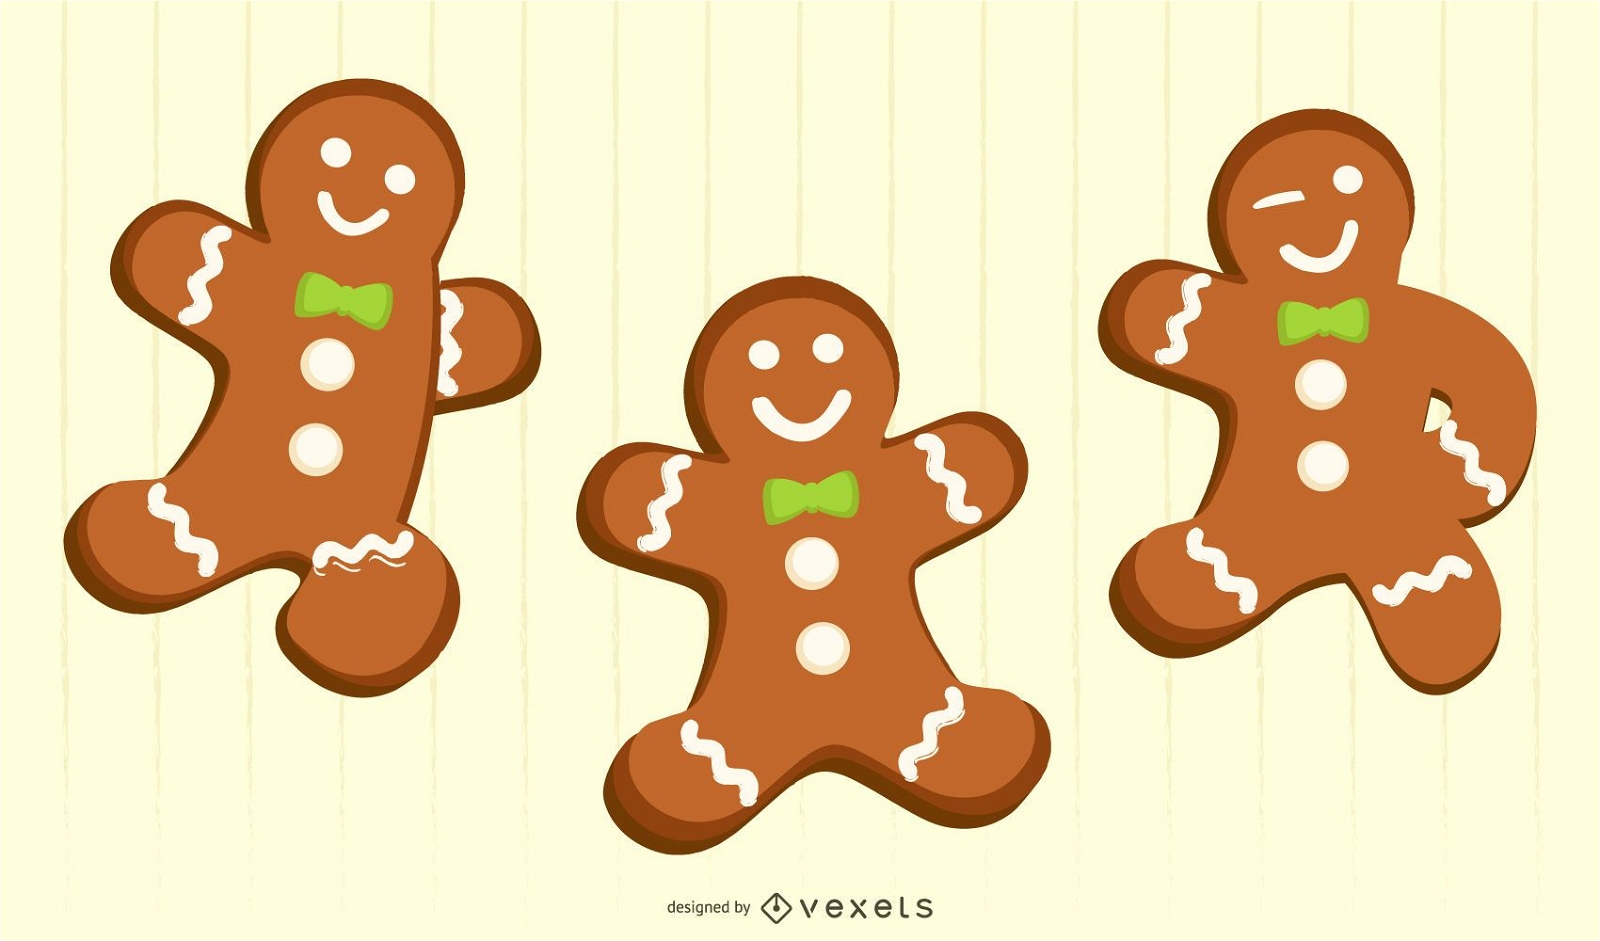 three gingerbread men for christmas cards / koekmannen voor kerstkaarten 